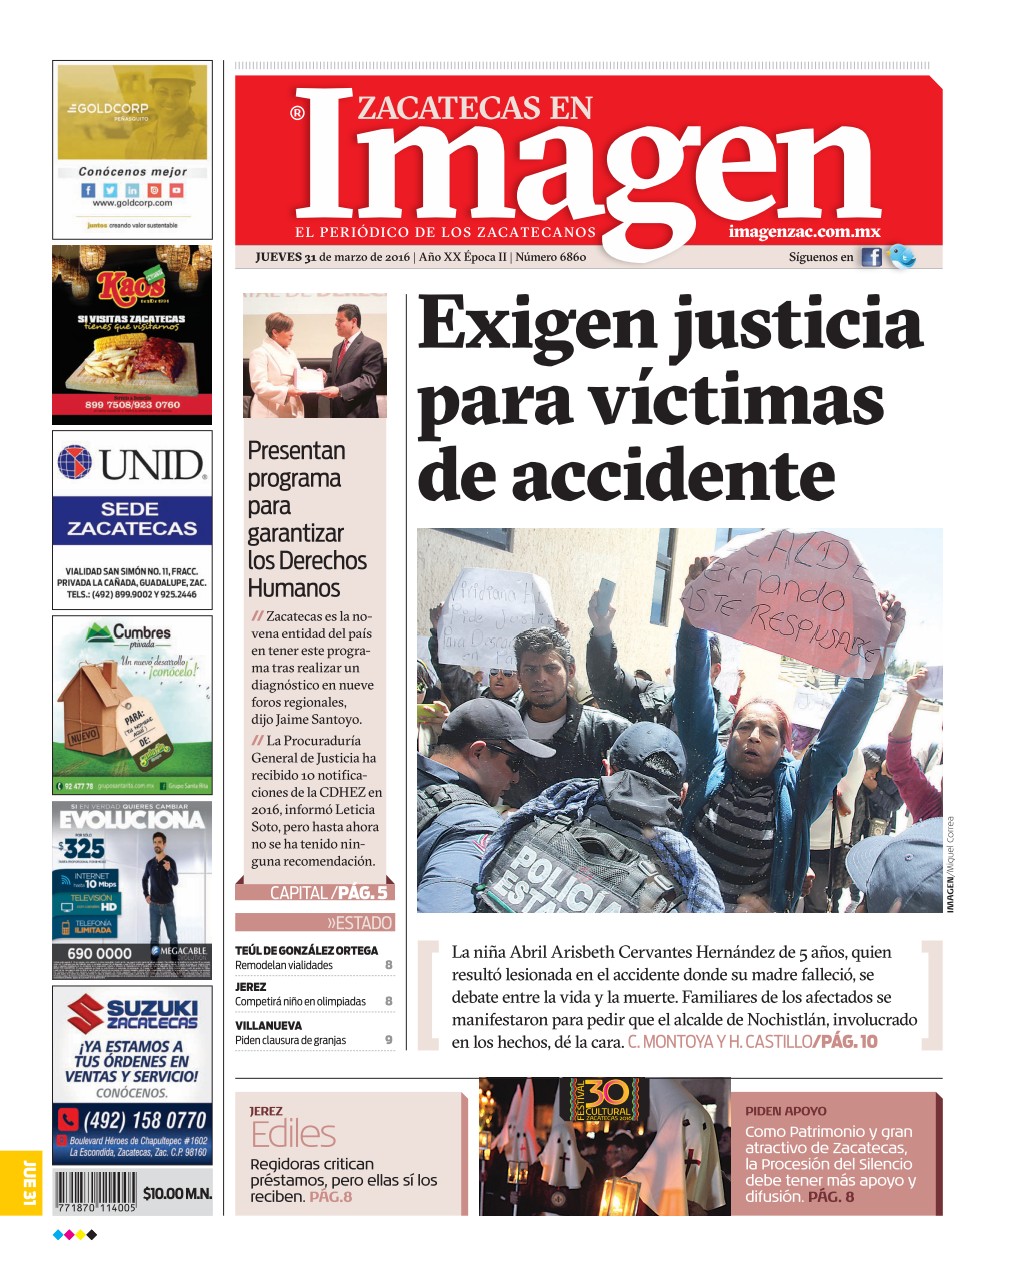 Imagen Zacatecas edición del 31 de Marzo 2016